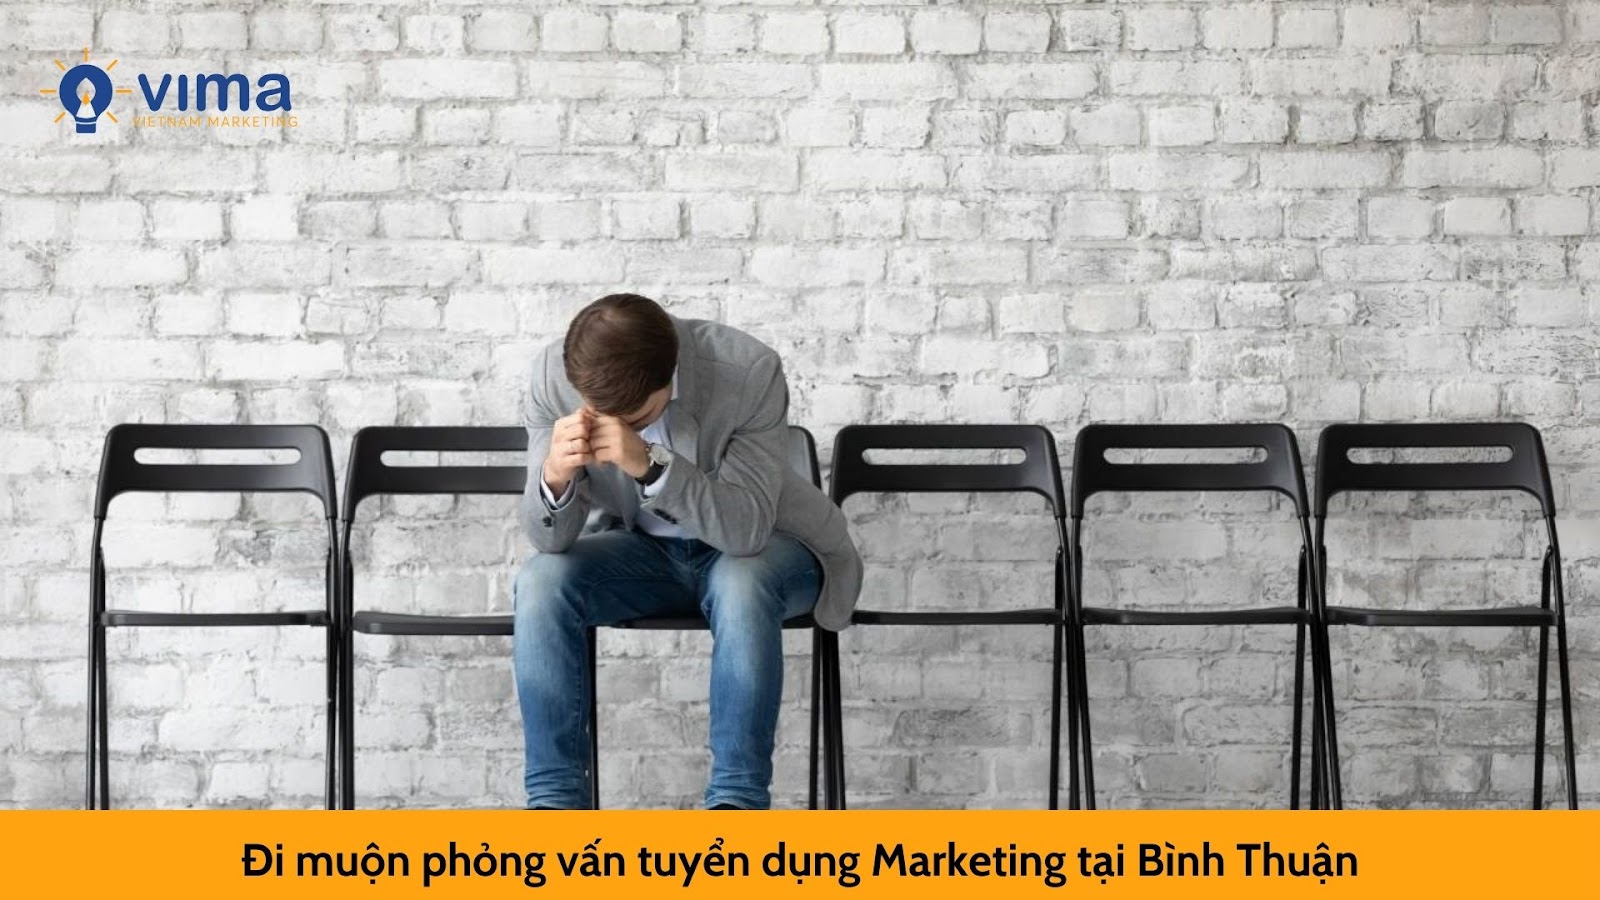 Lý do trượt phỏng vấn tuyển dụng Marketing tại Bình Thuận